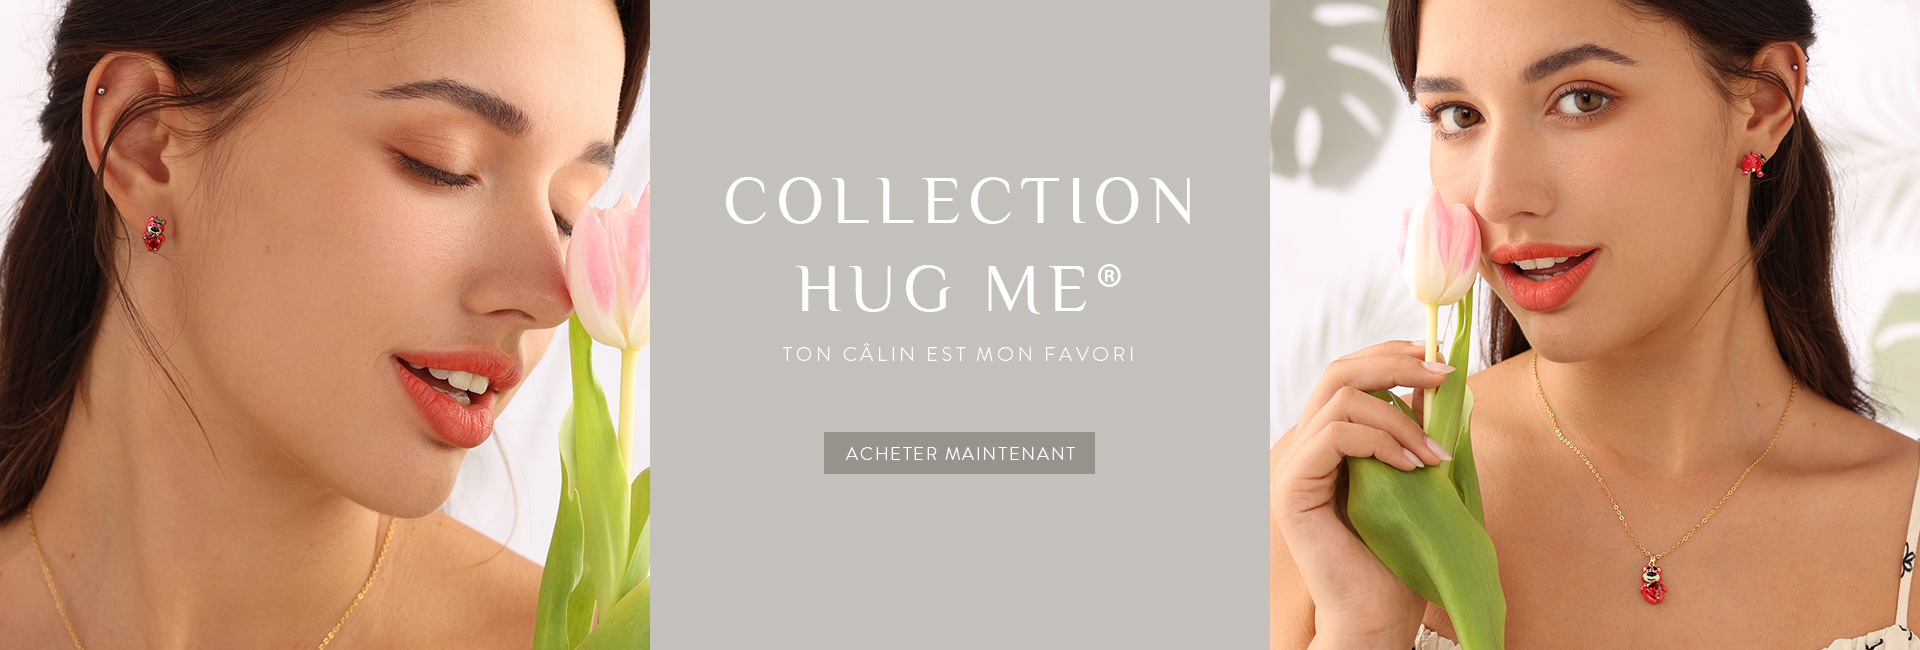 Collection Hug Me